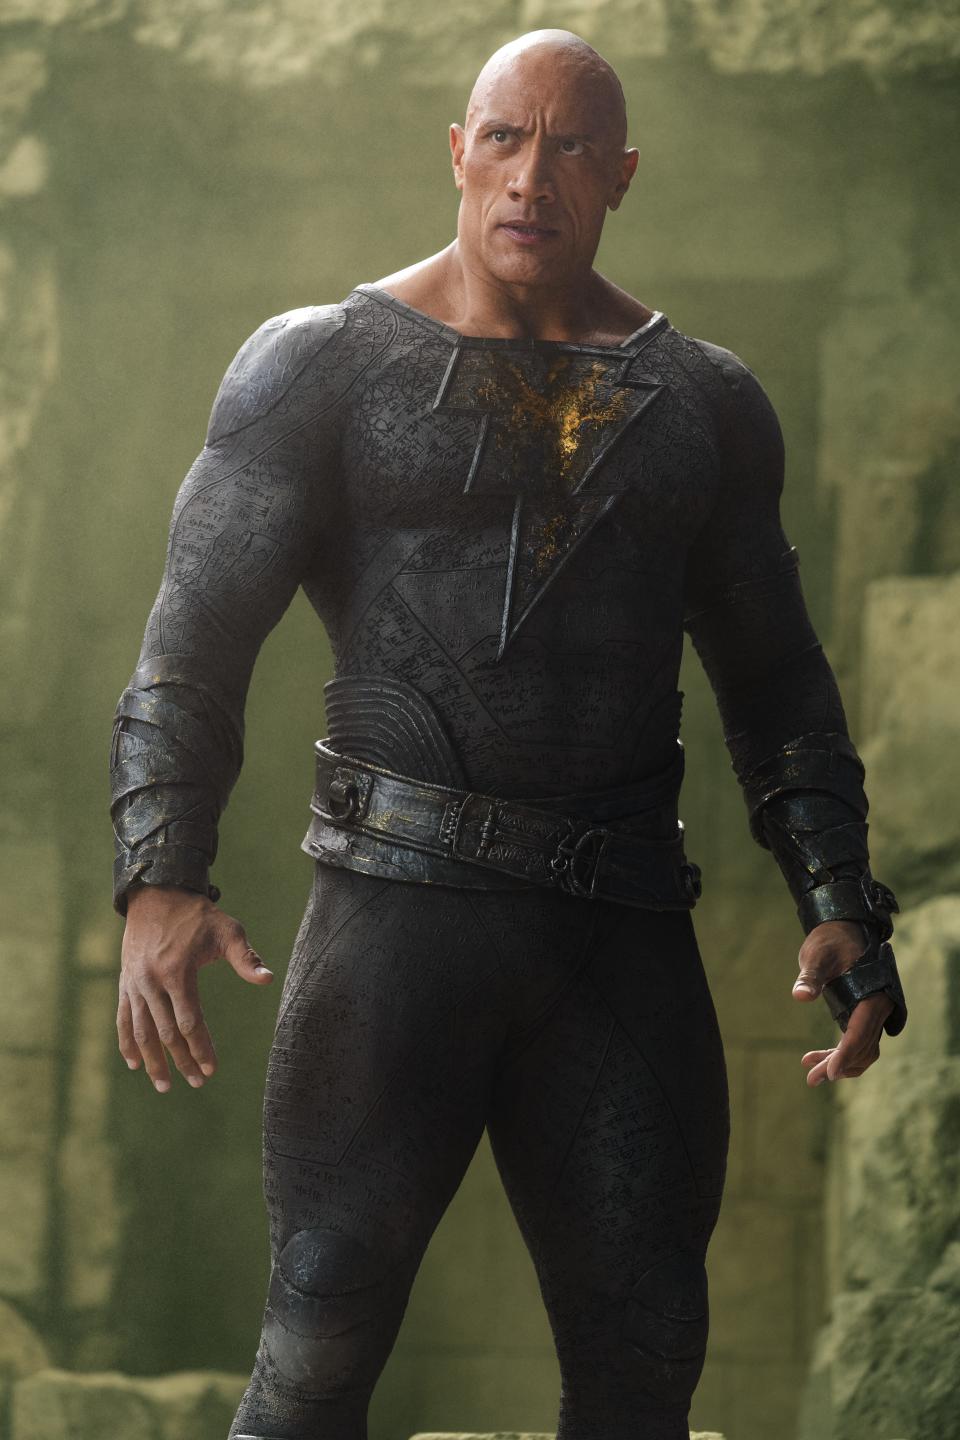 Dwayne Johnson makes his DC superhero debut in "Black Adam."